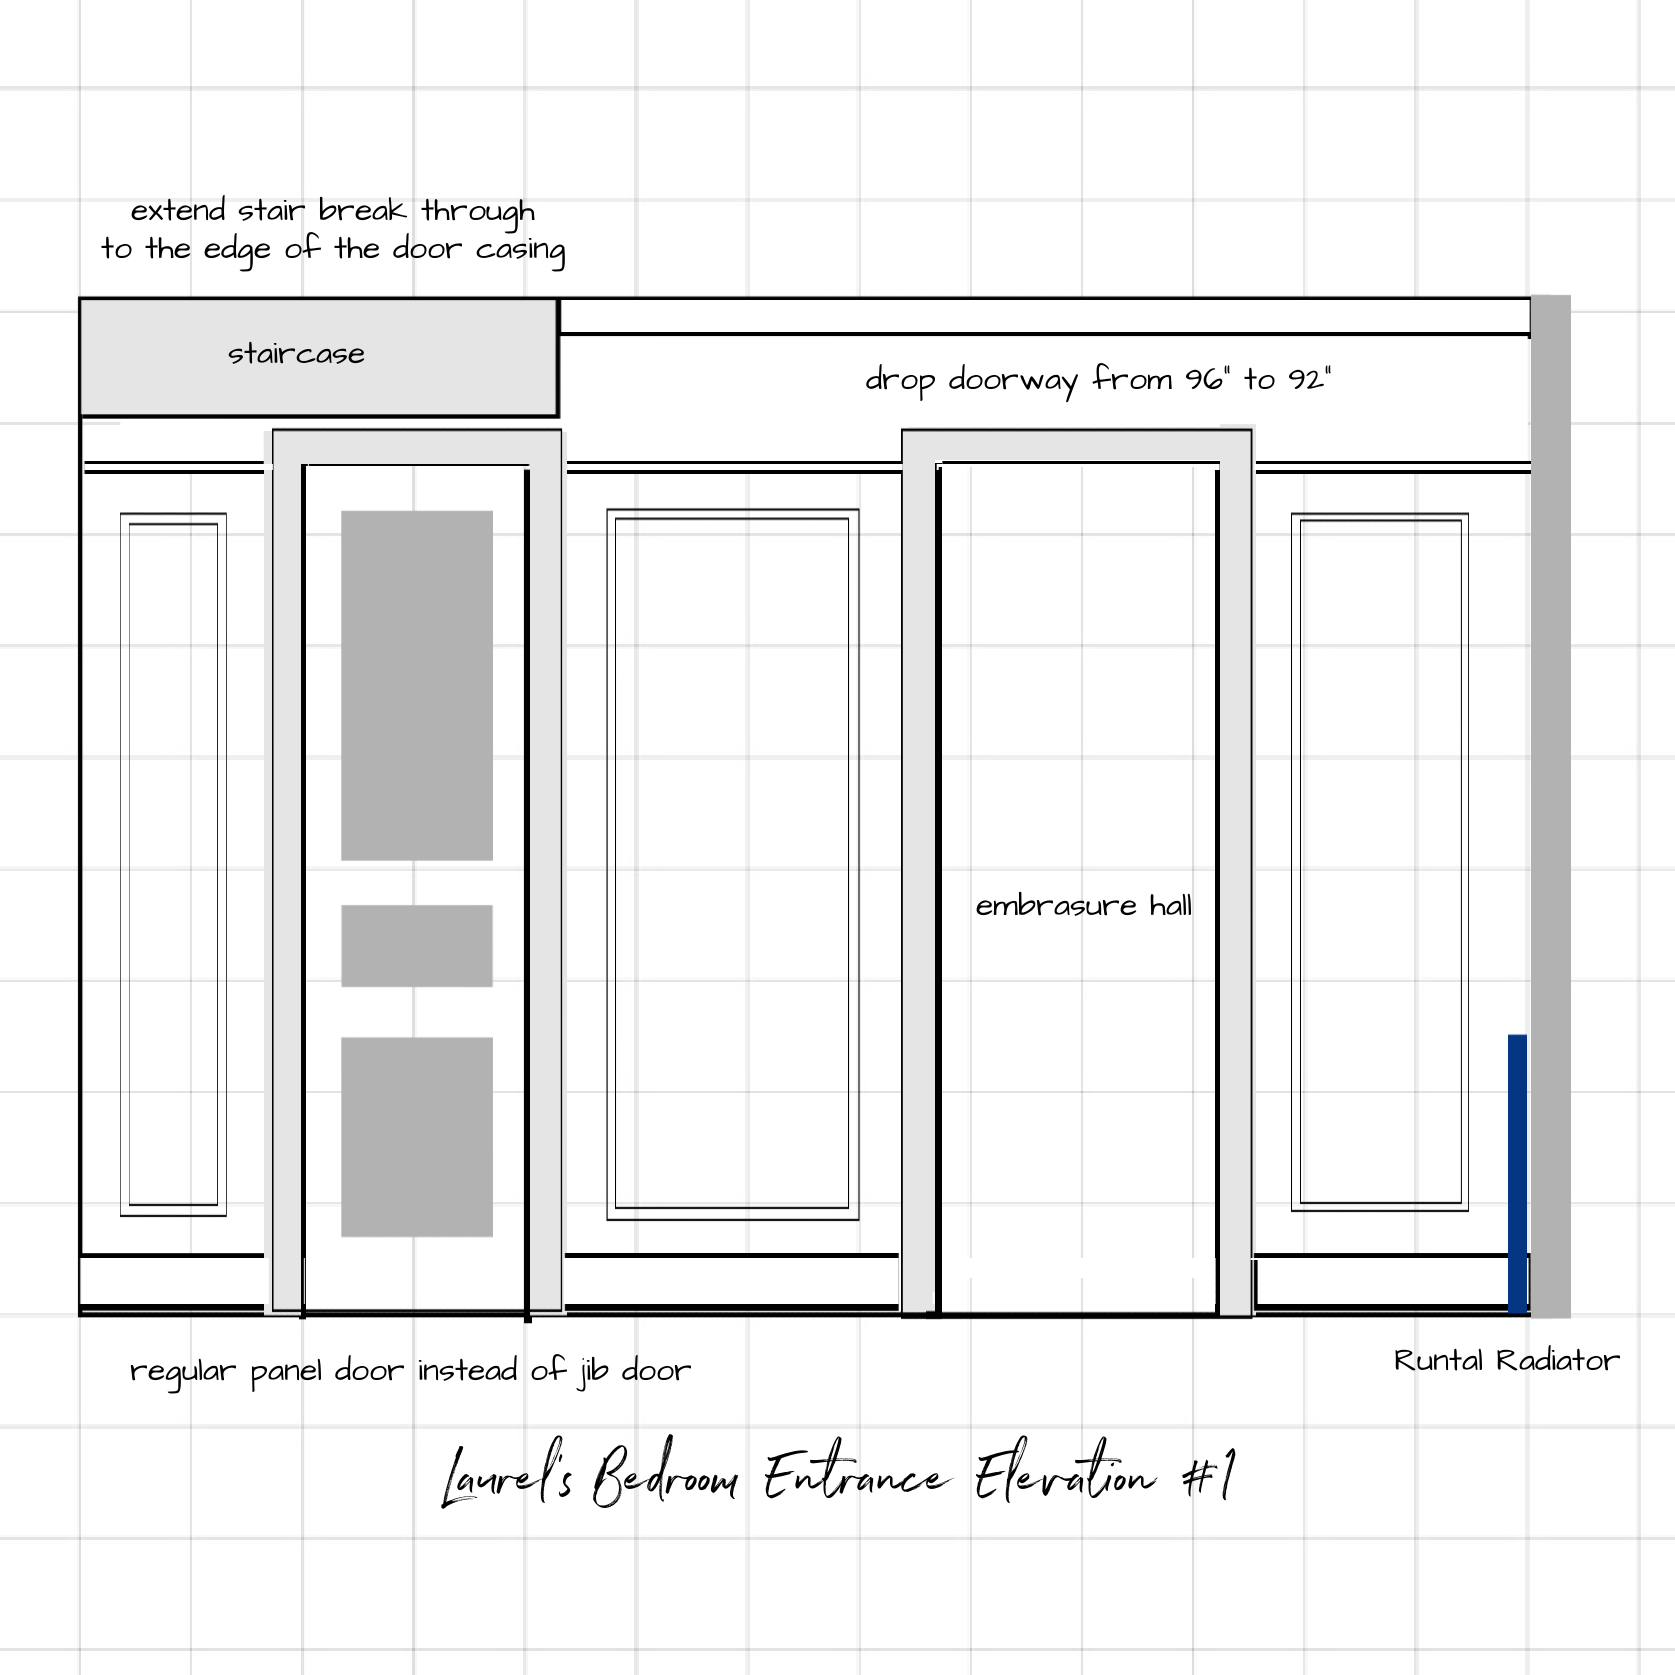 bedroom entrance elevation idea #1